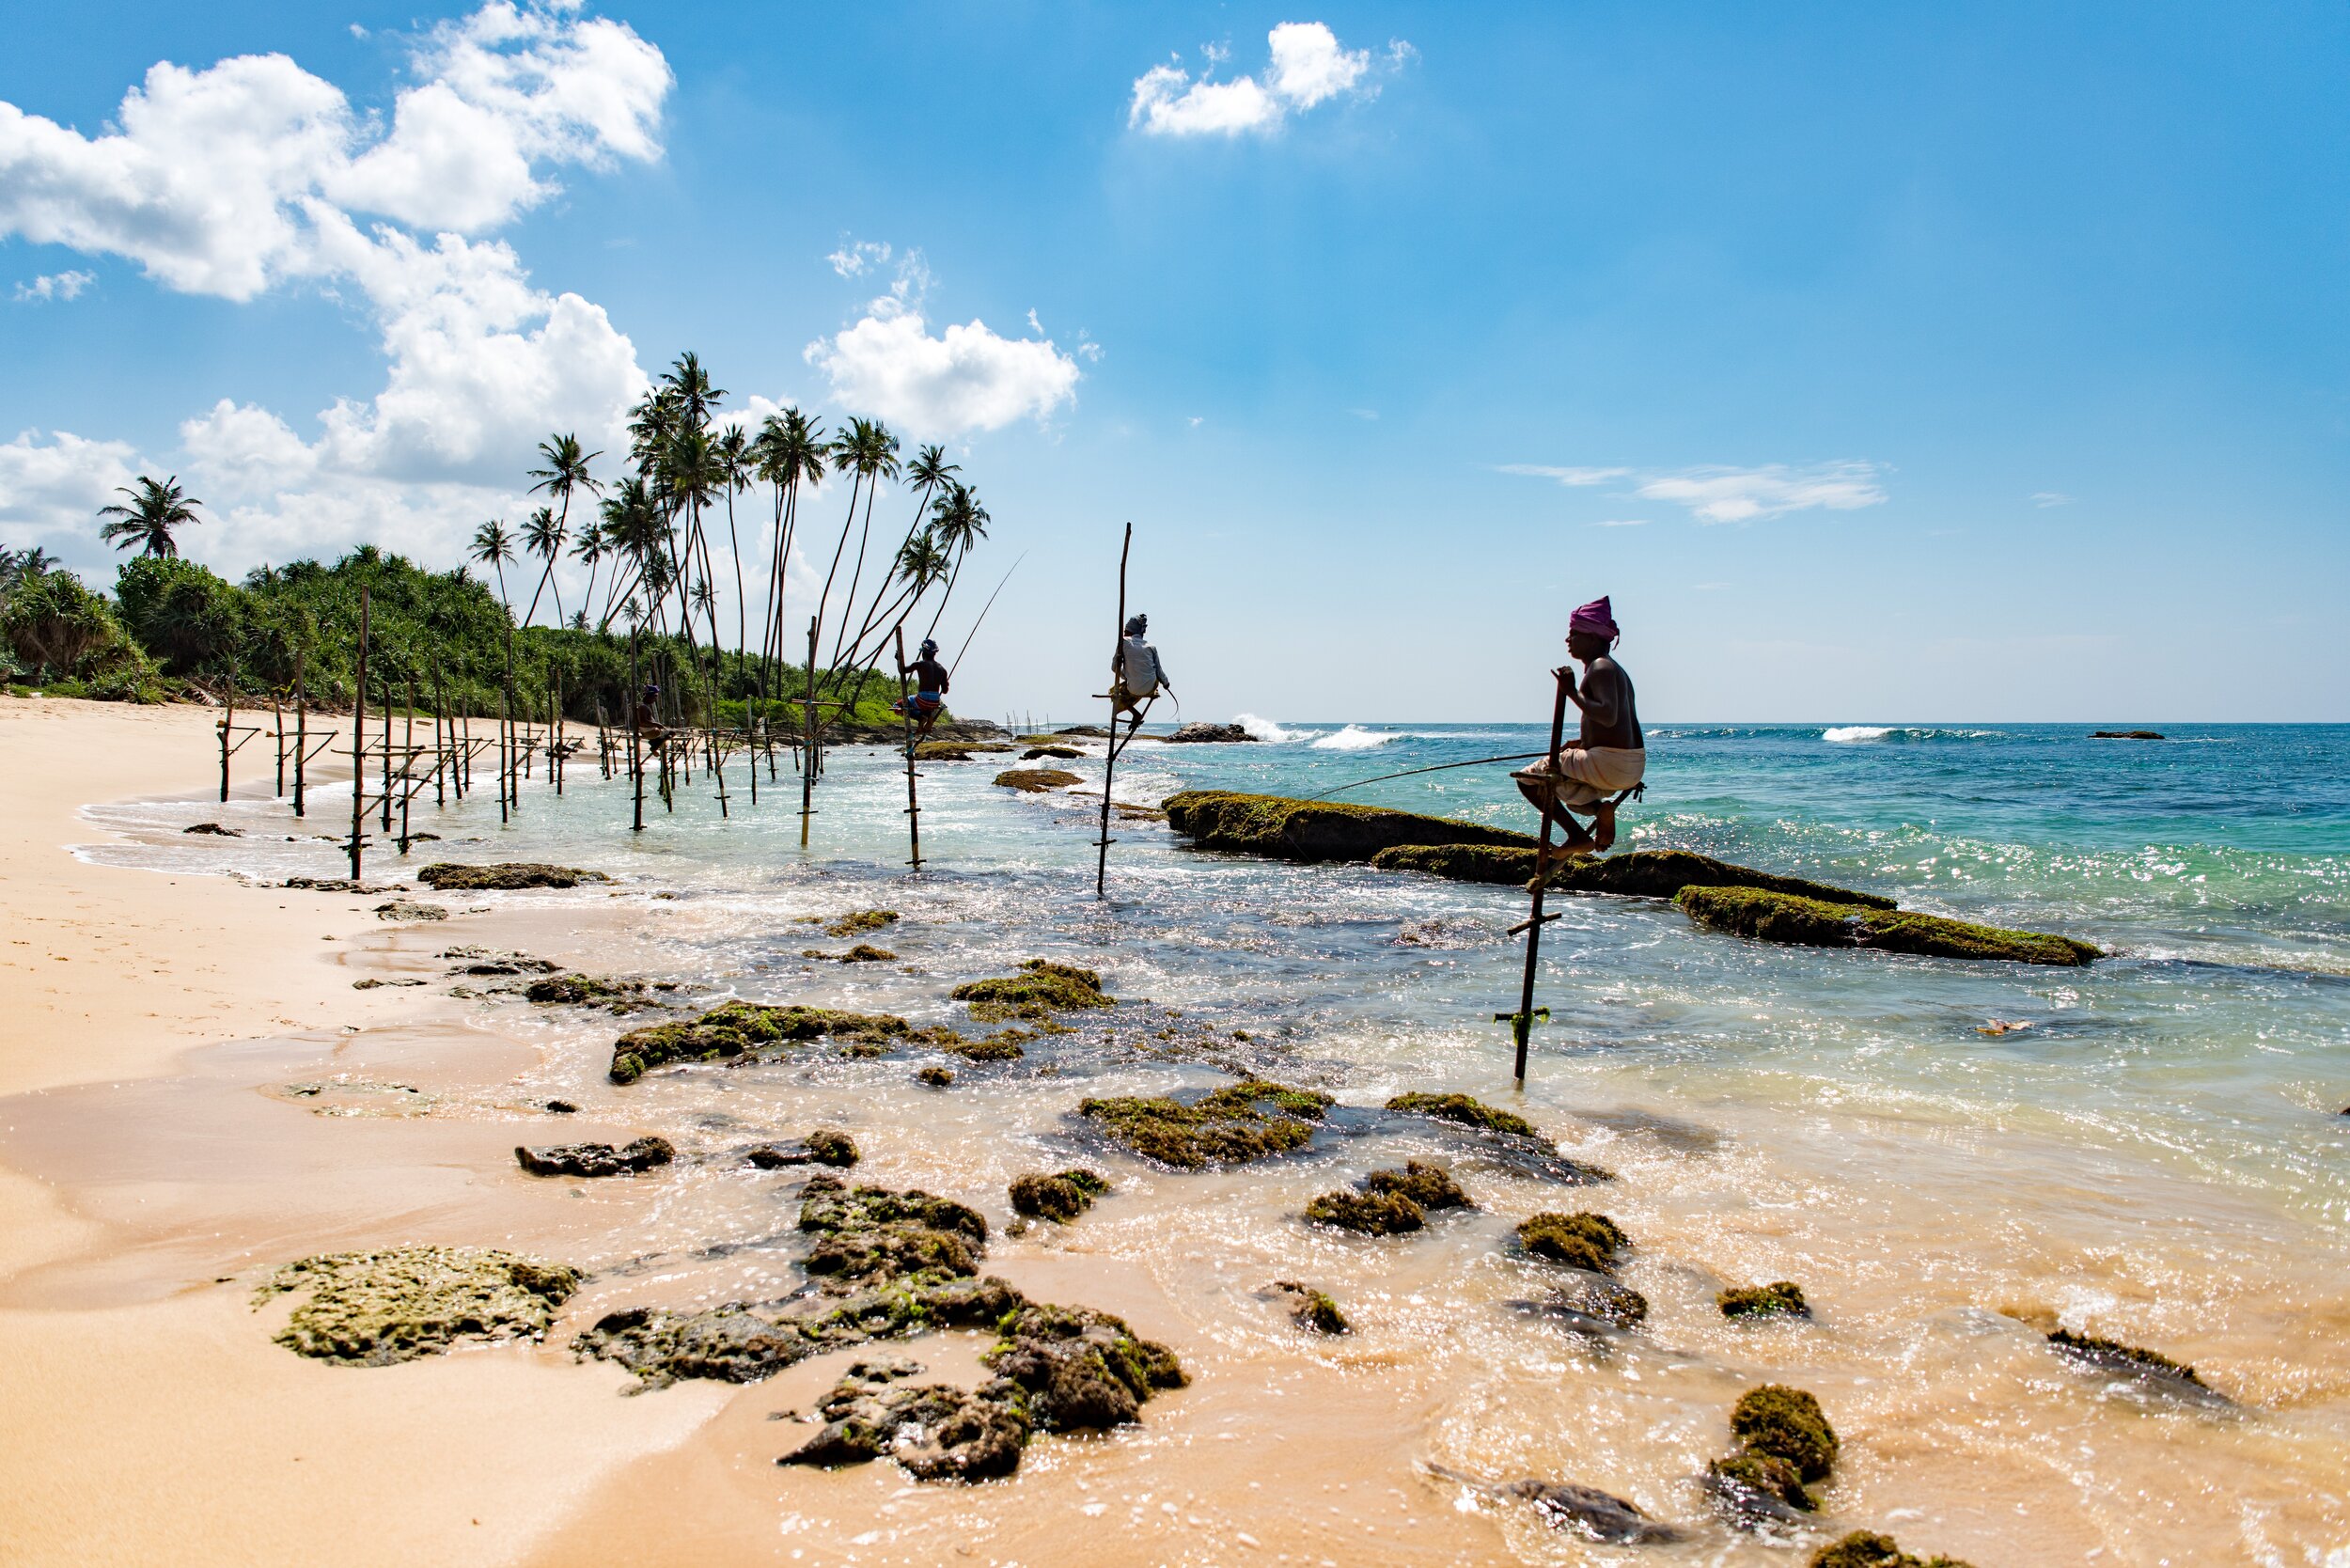 Stilt Fishing in Sri Lanka